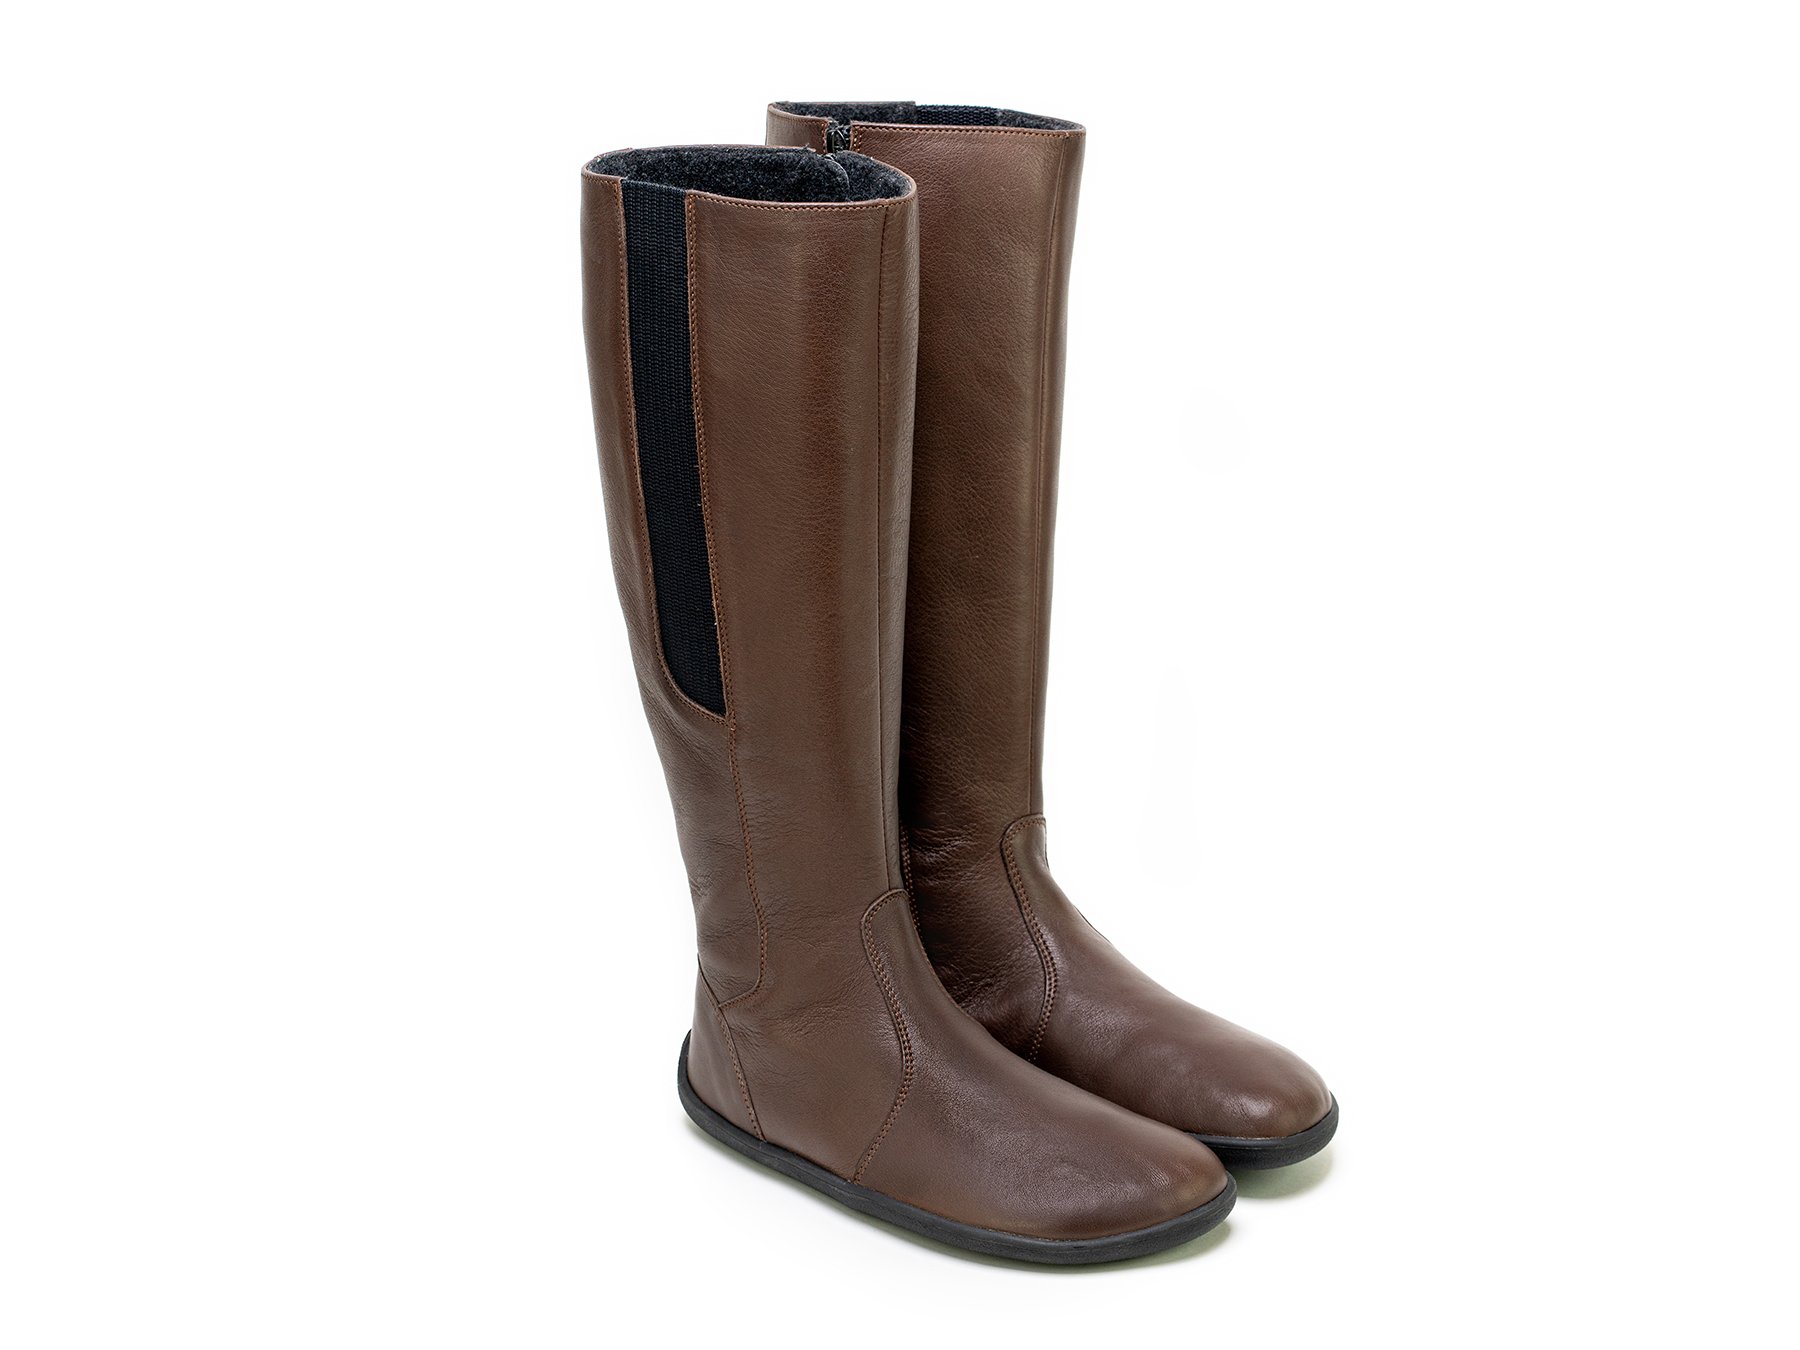 Barefoot long boots Be Lenka Sierra - Dark Chocolate | Be Lenka